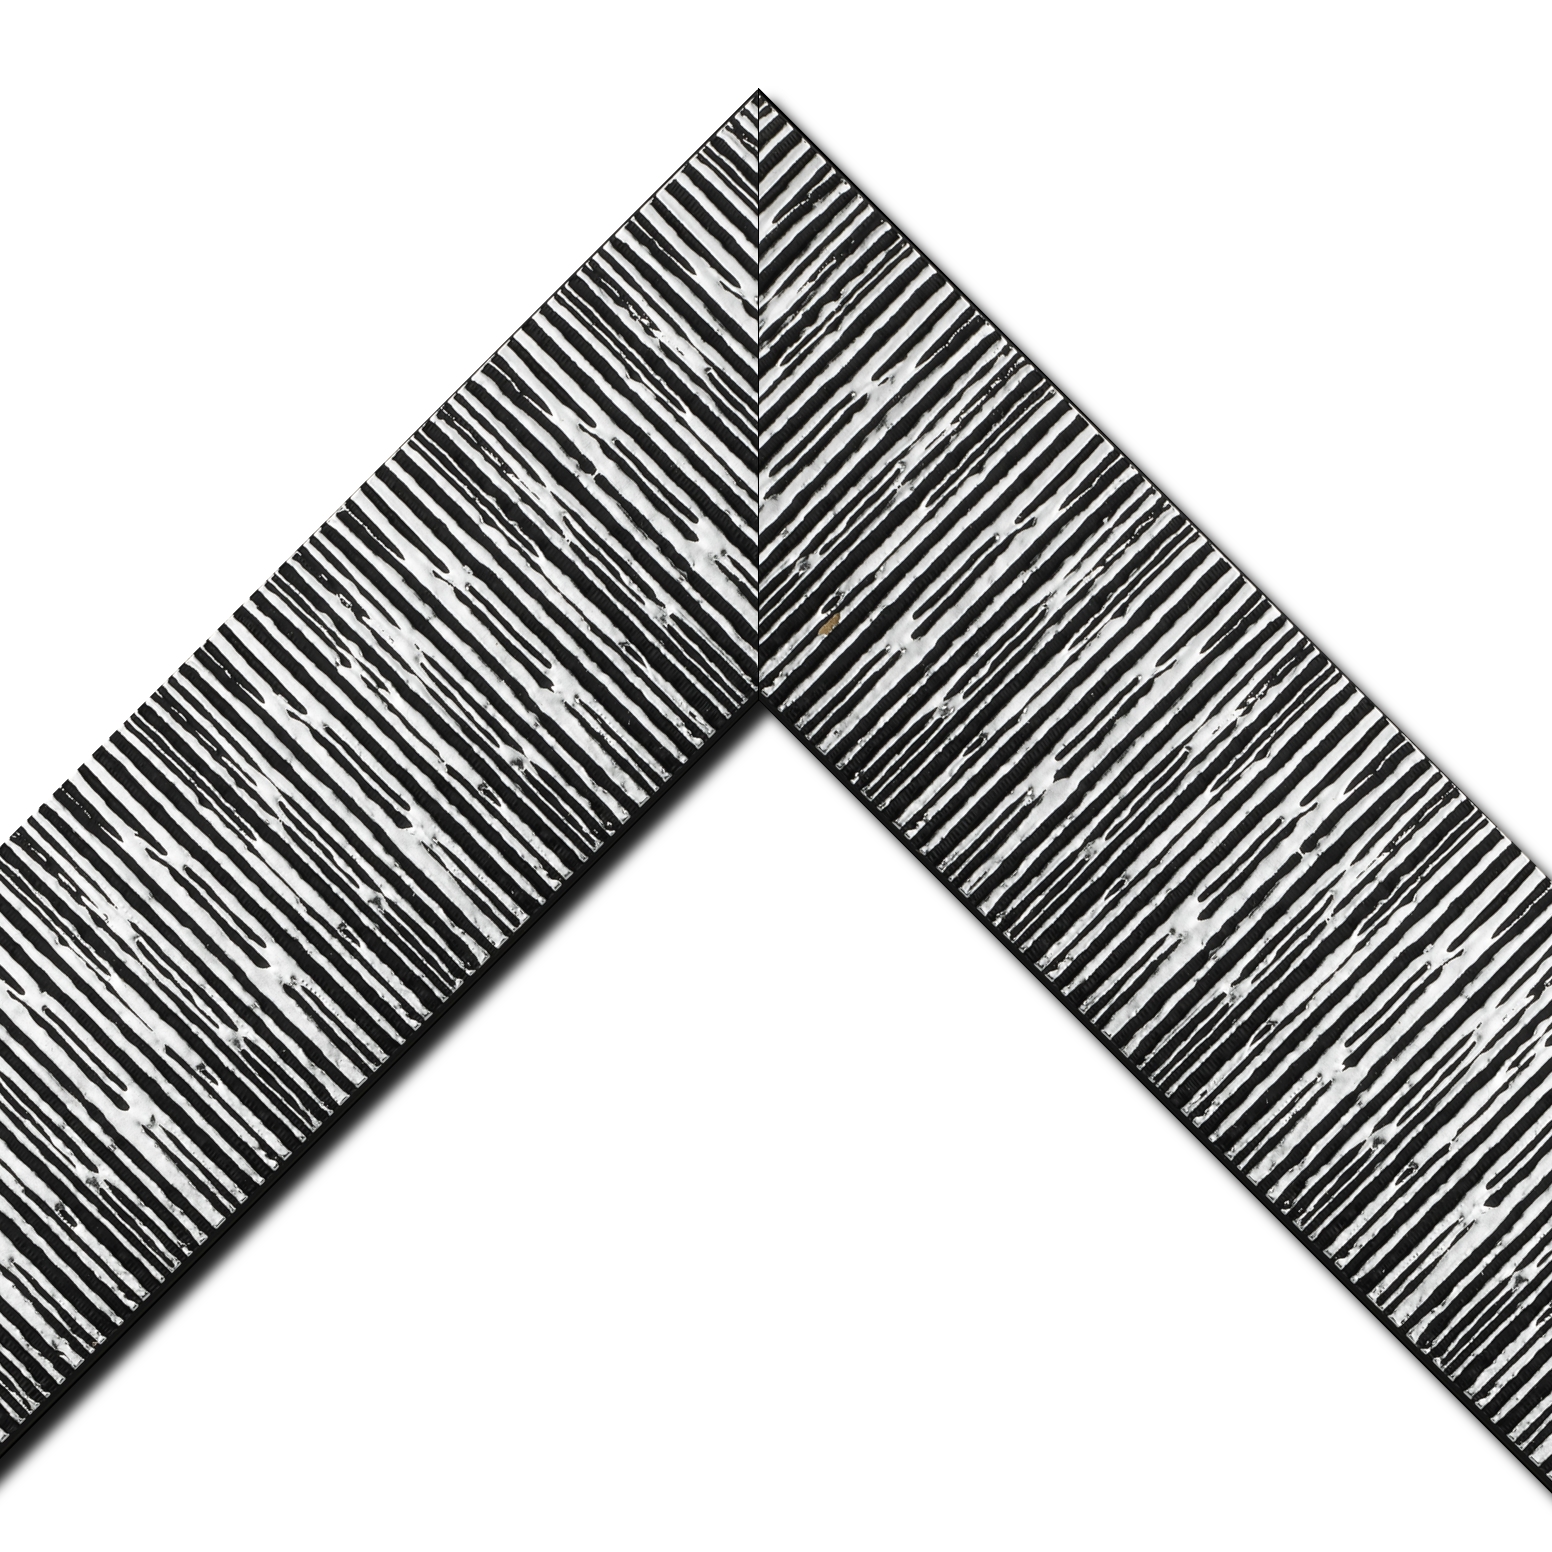 Baguette bois profil plat largeur 10.5cm couleur noir mat strié argent chromé en relief